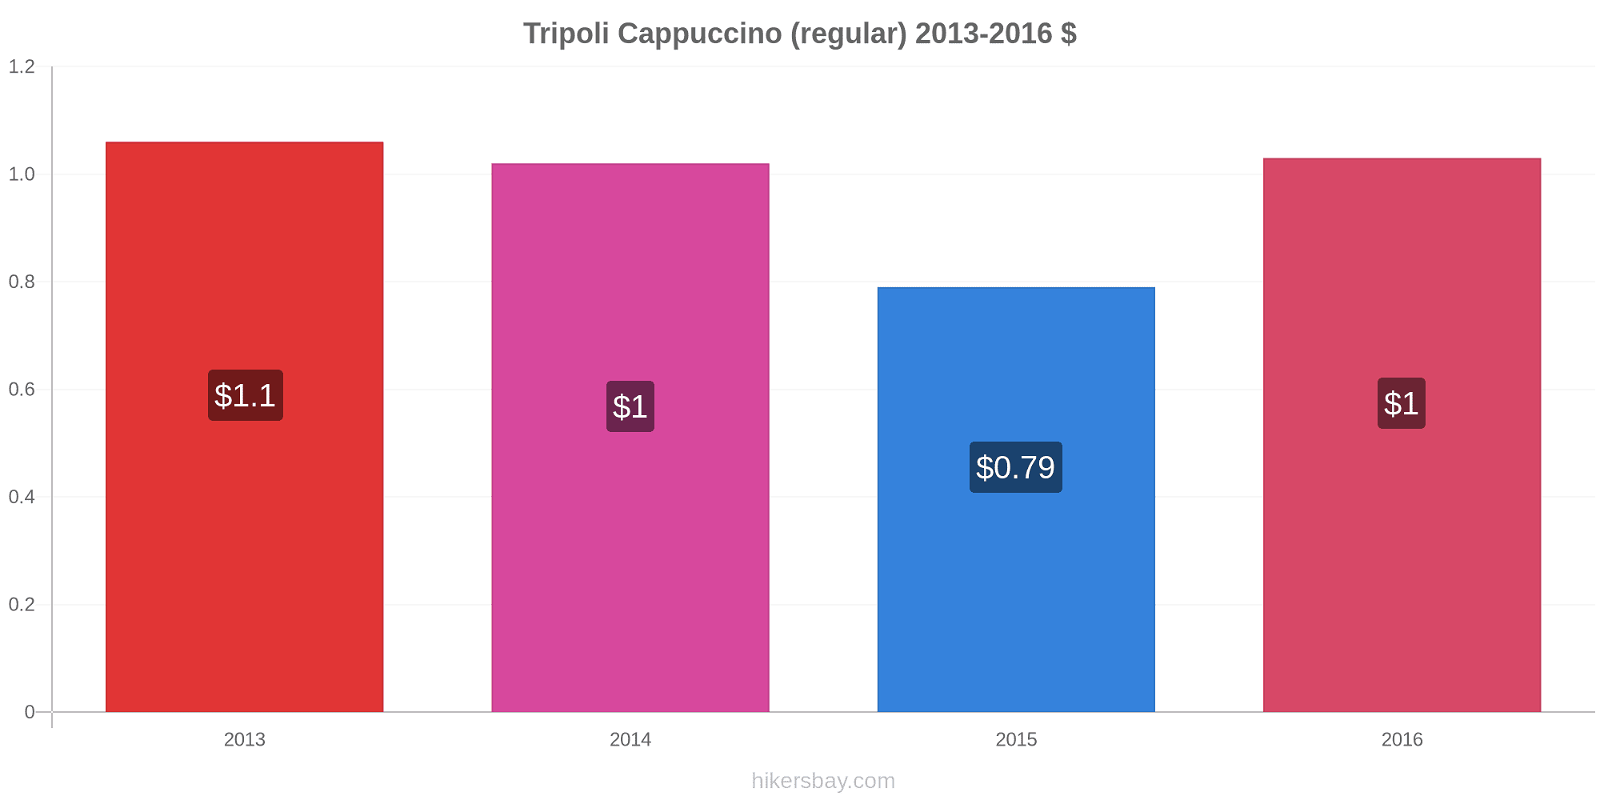 Tripoli price changes Cappuccino (regular) hikersbay.com